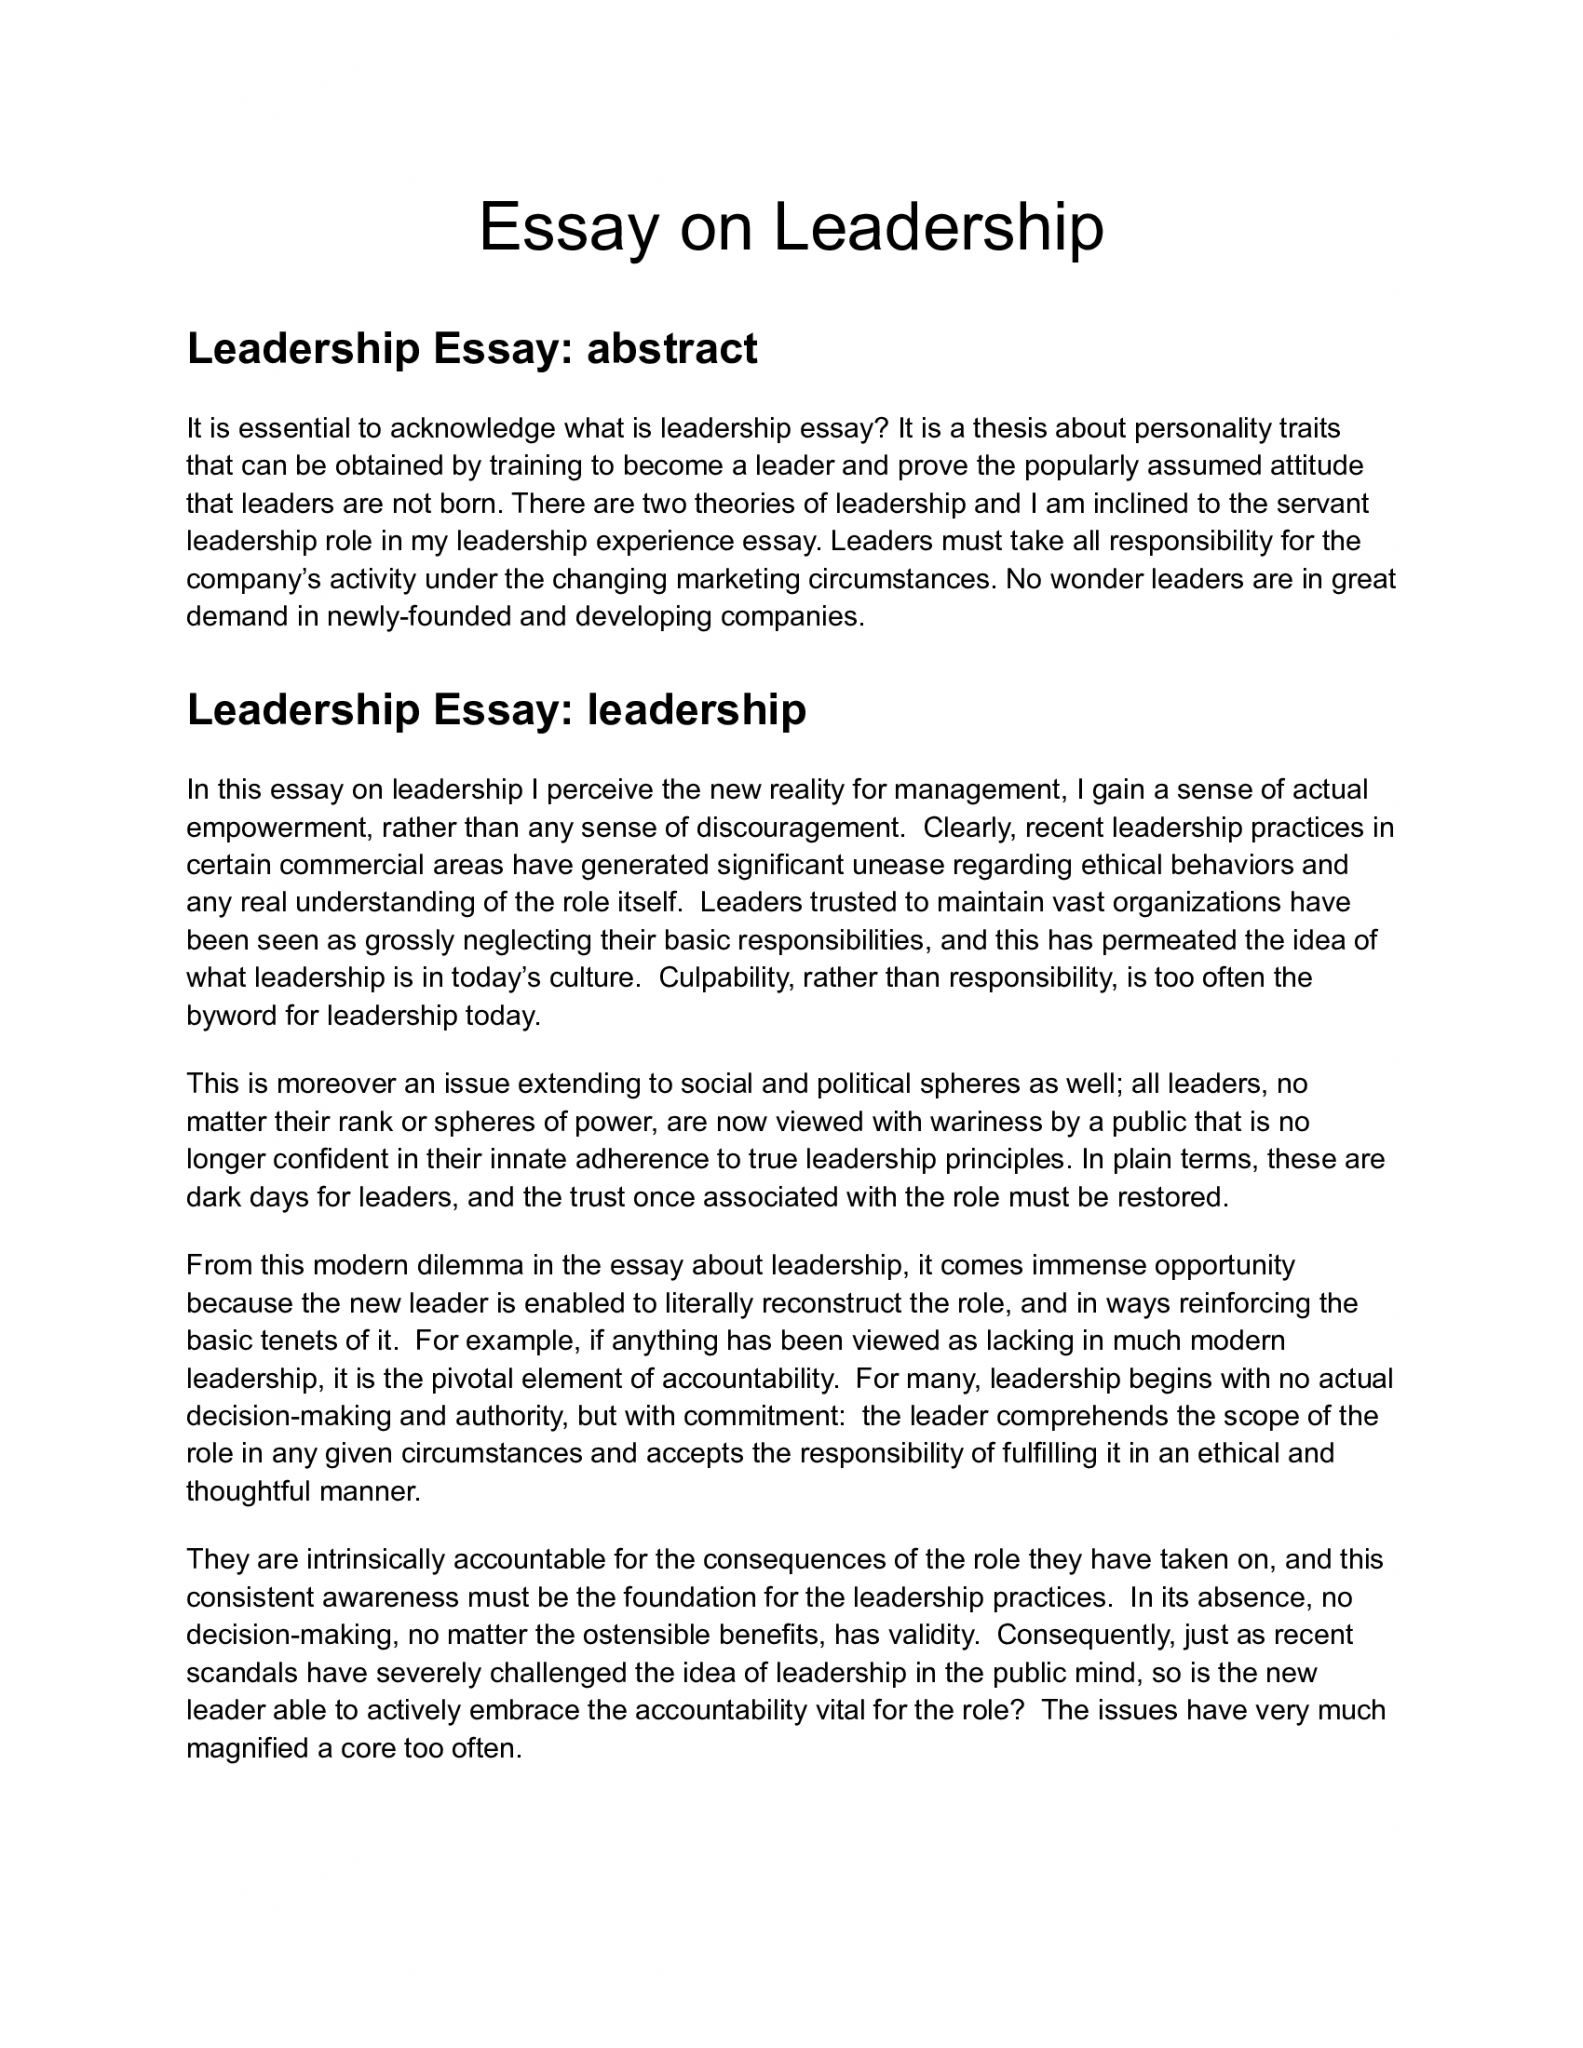 university essay on leadership